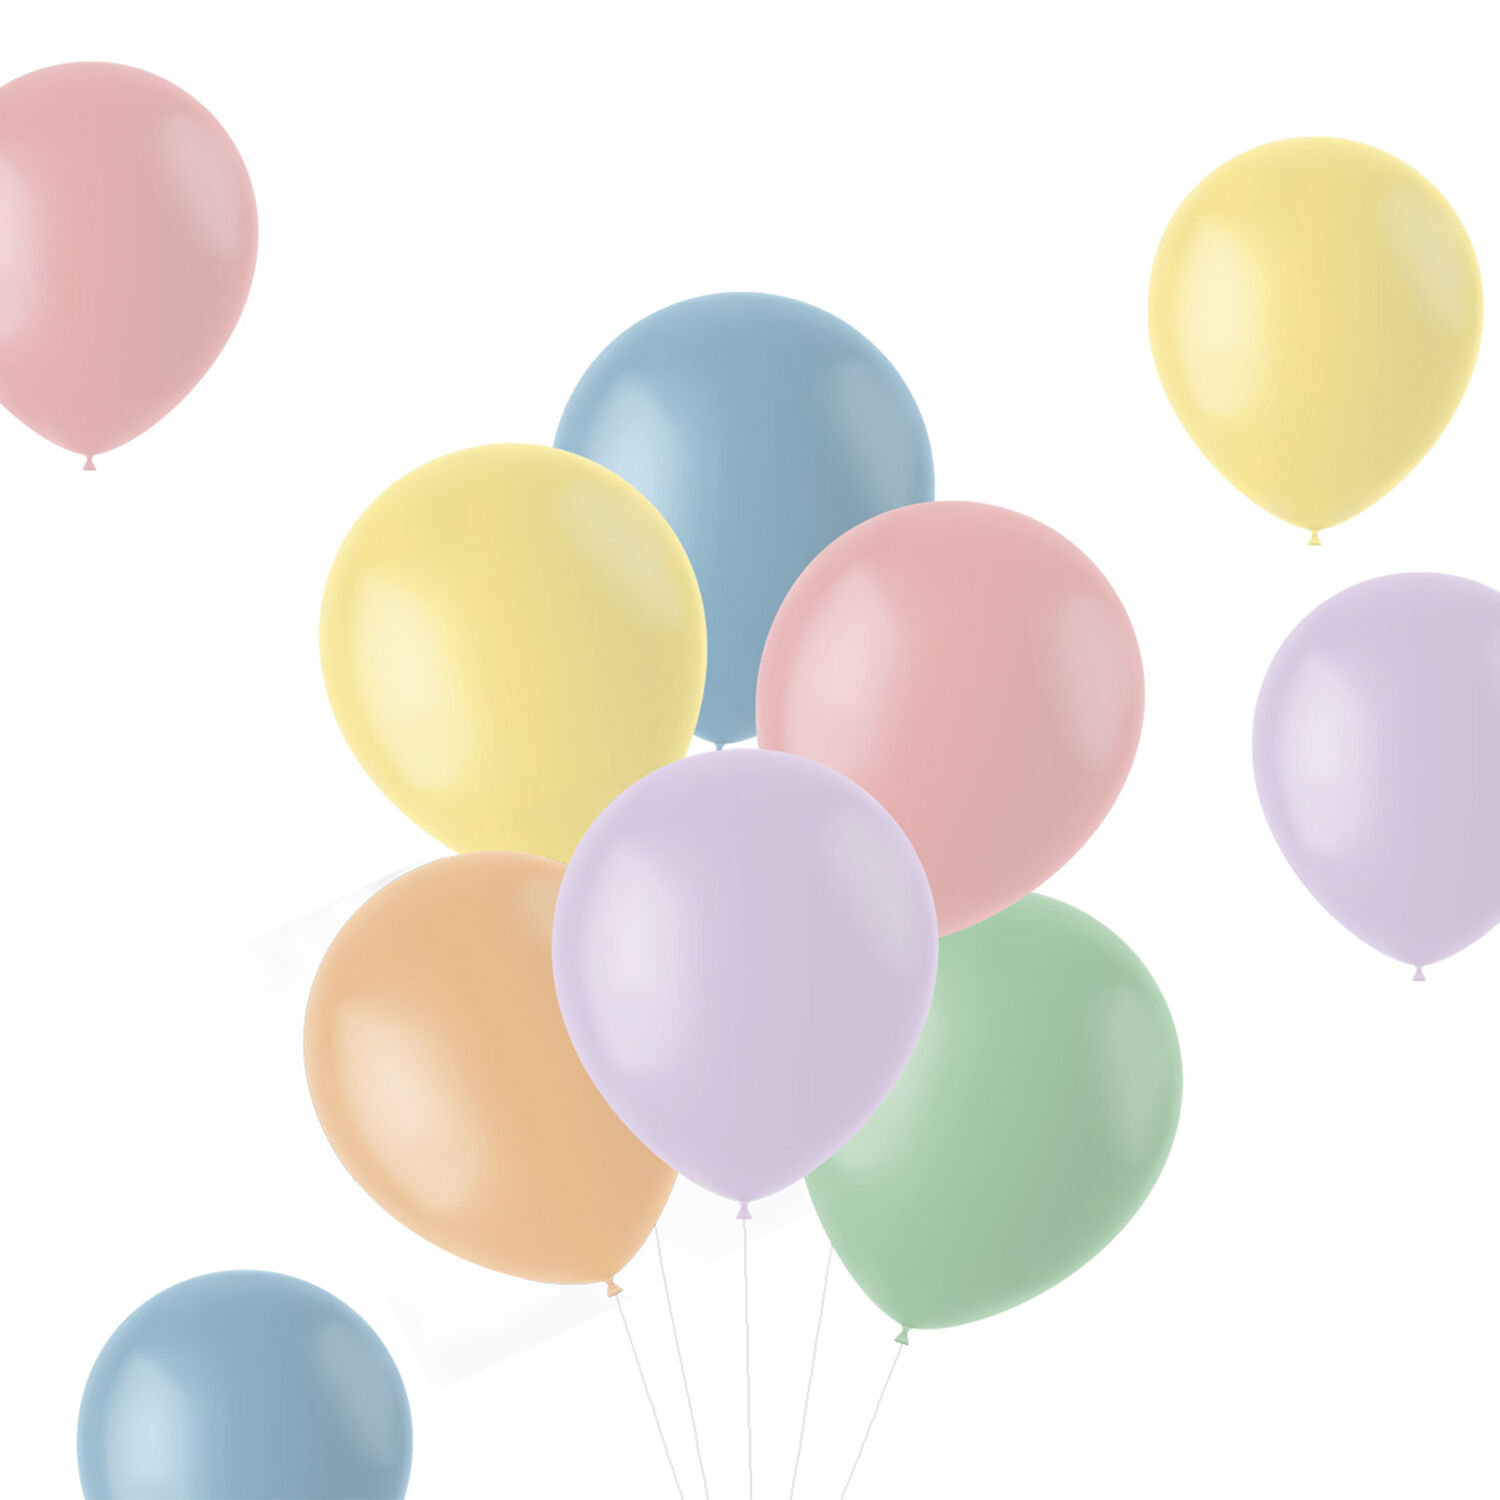 NEU Latex-Luftballons matt, 33cm, Pastelltöne bunt gemischt, 50 Stück